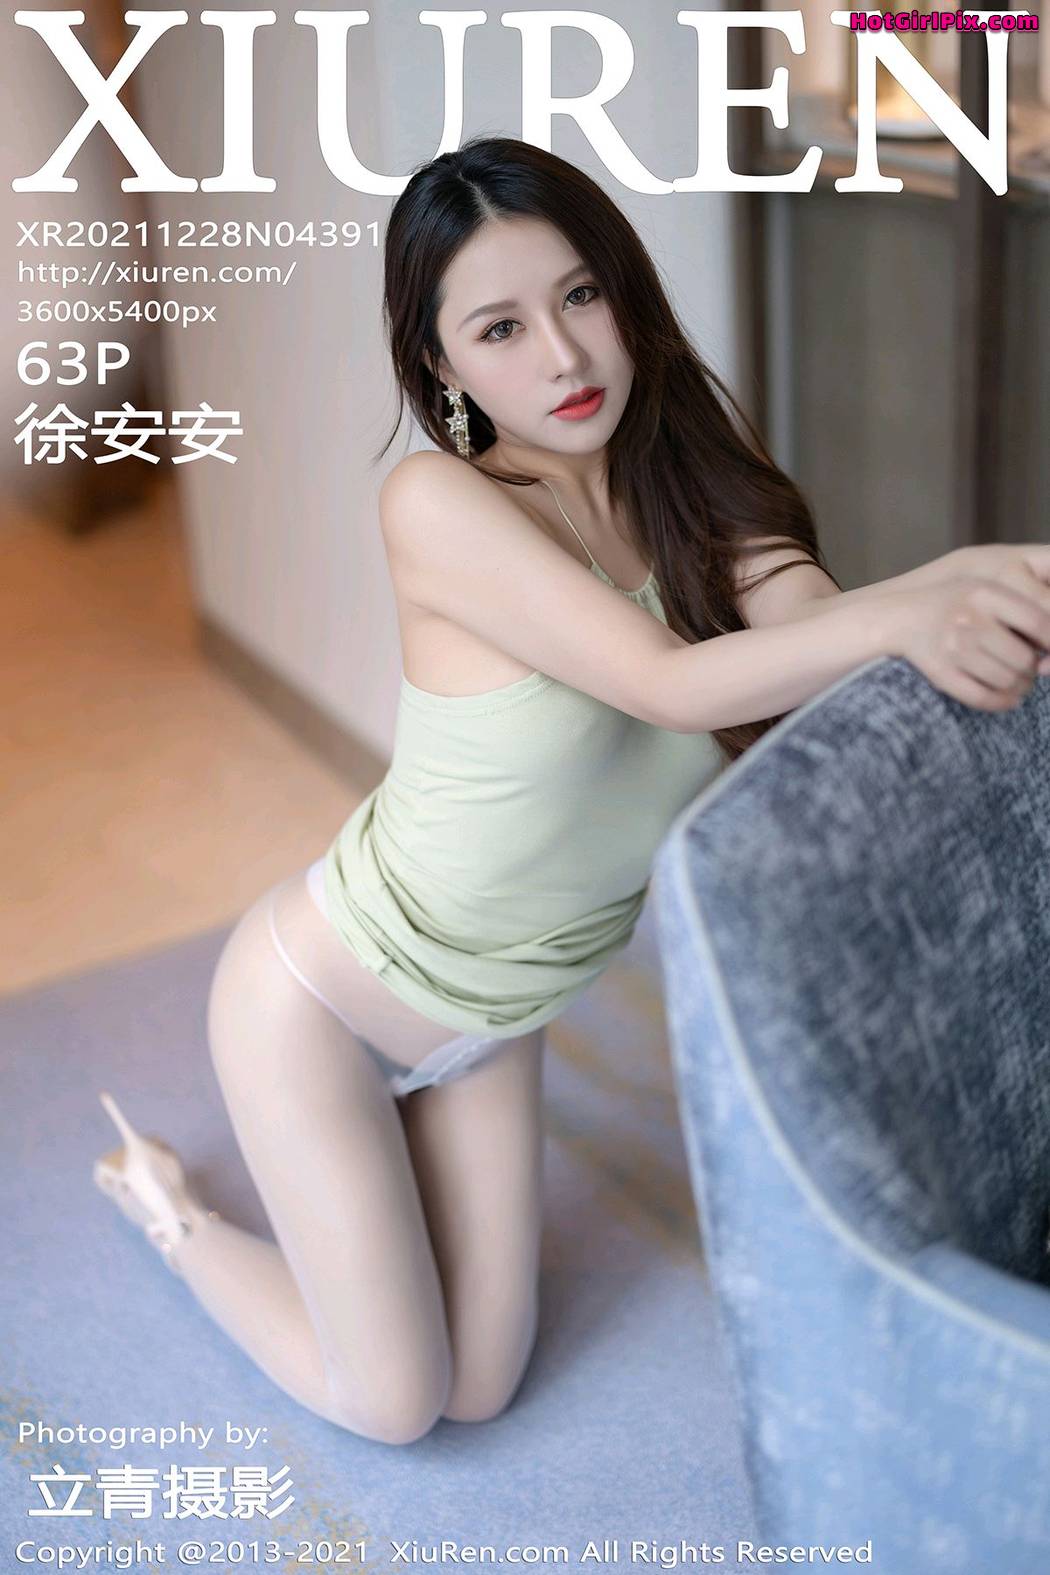 [XIUREN] No.4391 Xu An An 徐安安 Cover Photo